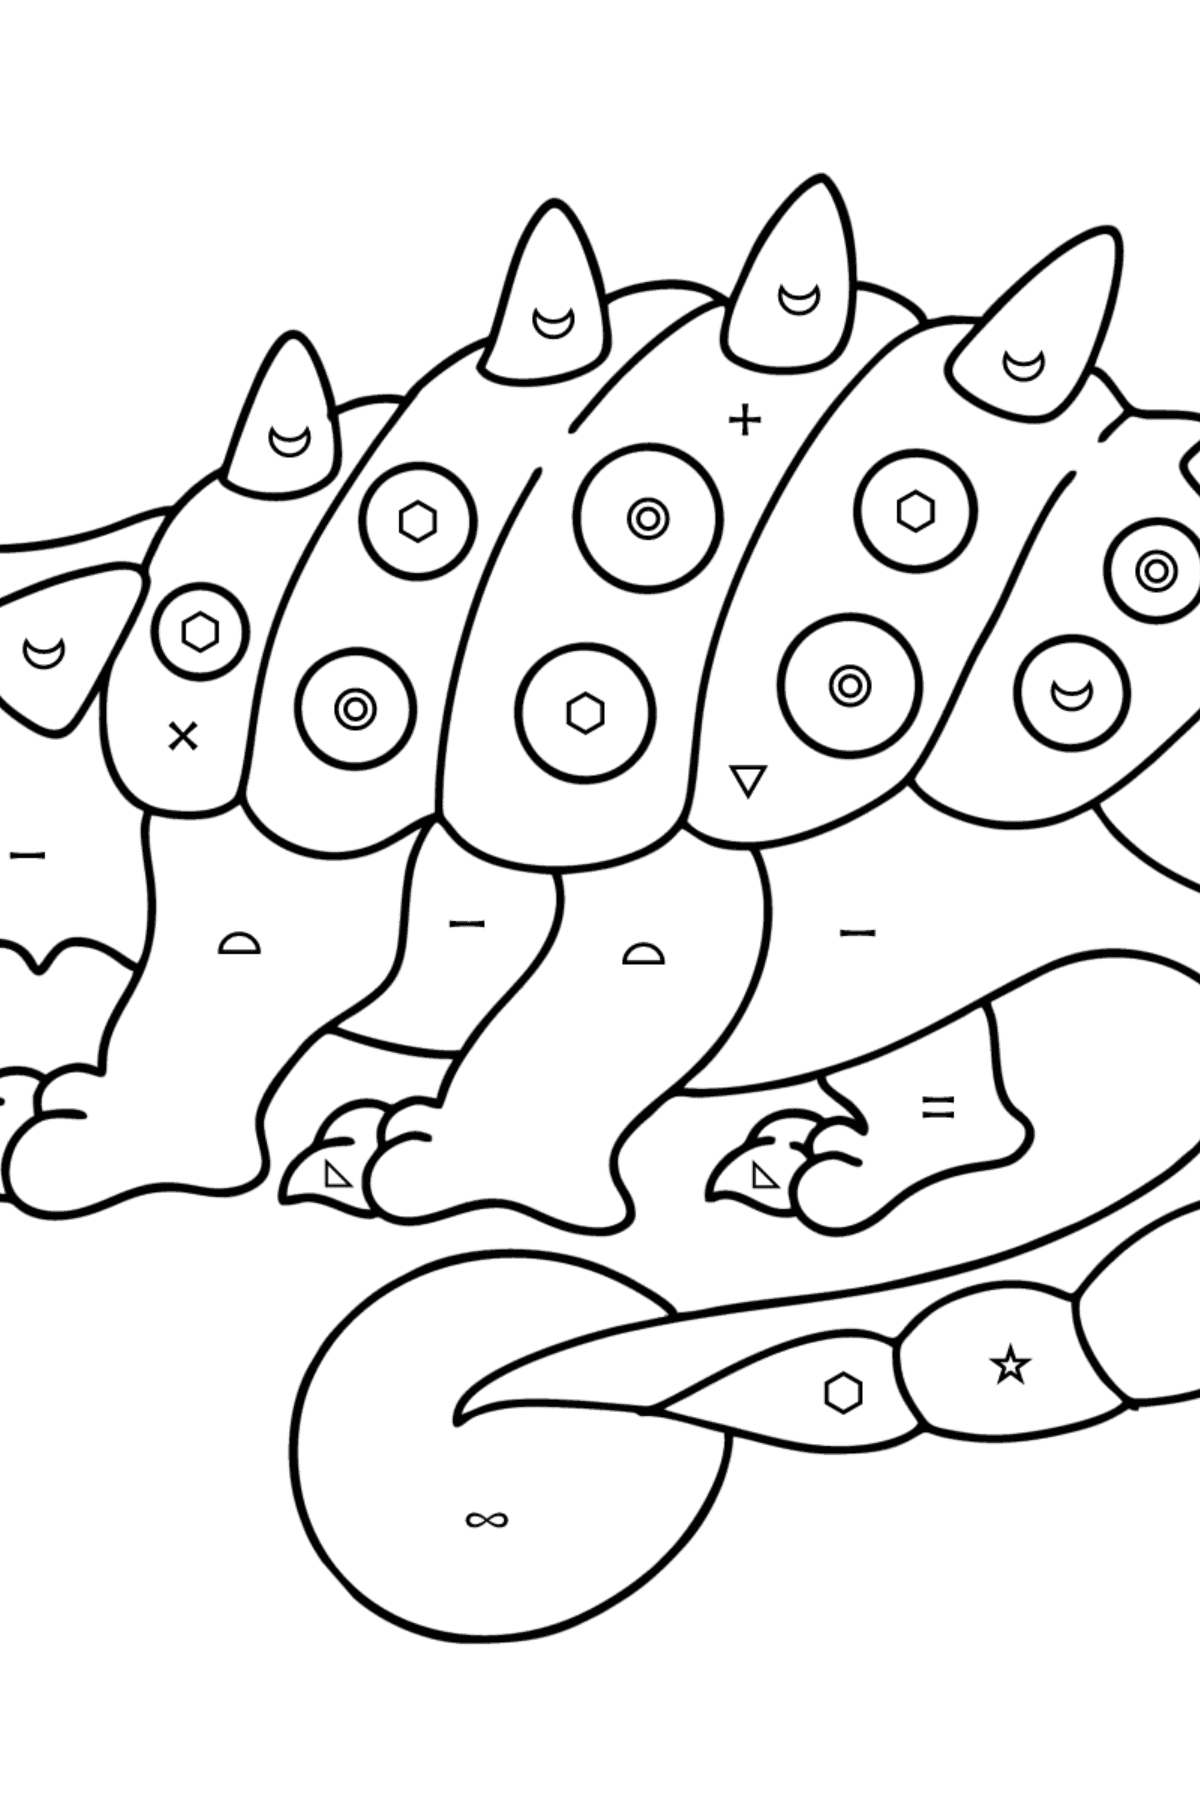 Dibujo de Anquilosaurio para colorear - Colorear por Símbolos para Niños